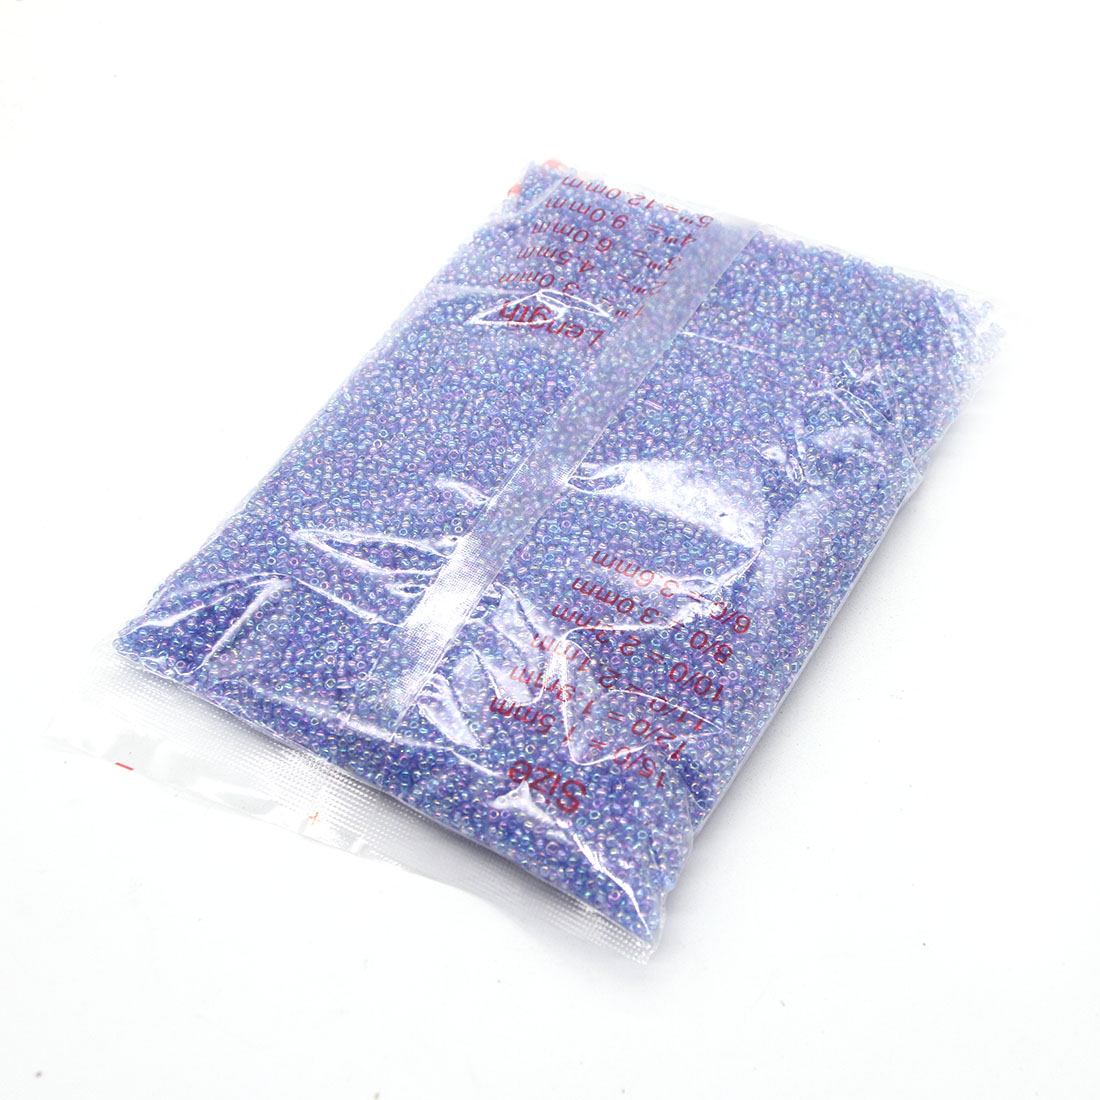 Light violet 2mm 30,000 packs